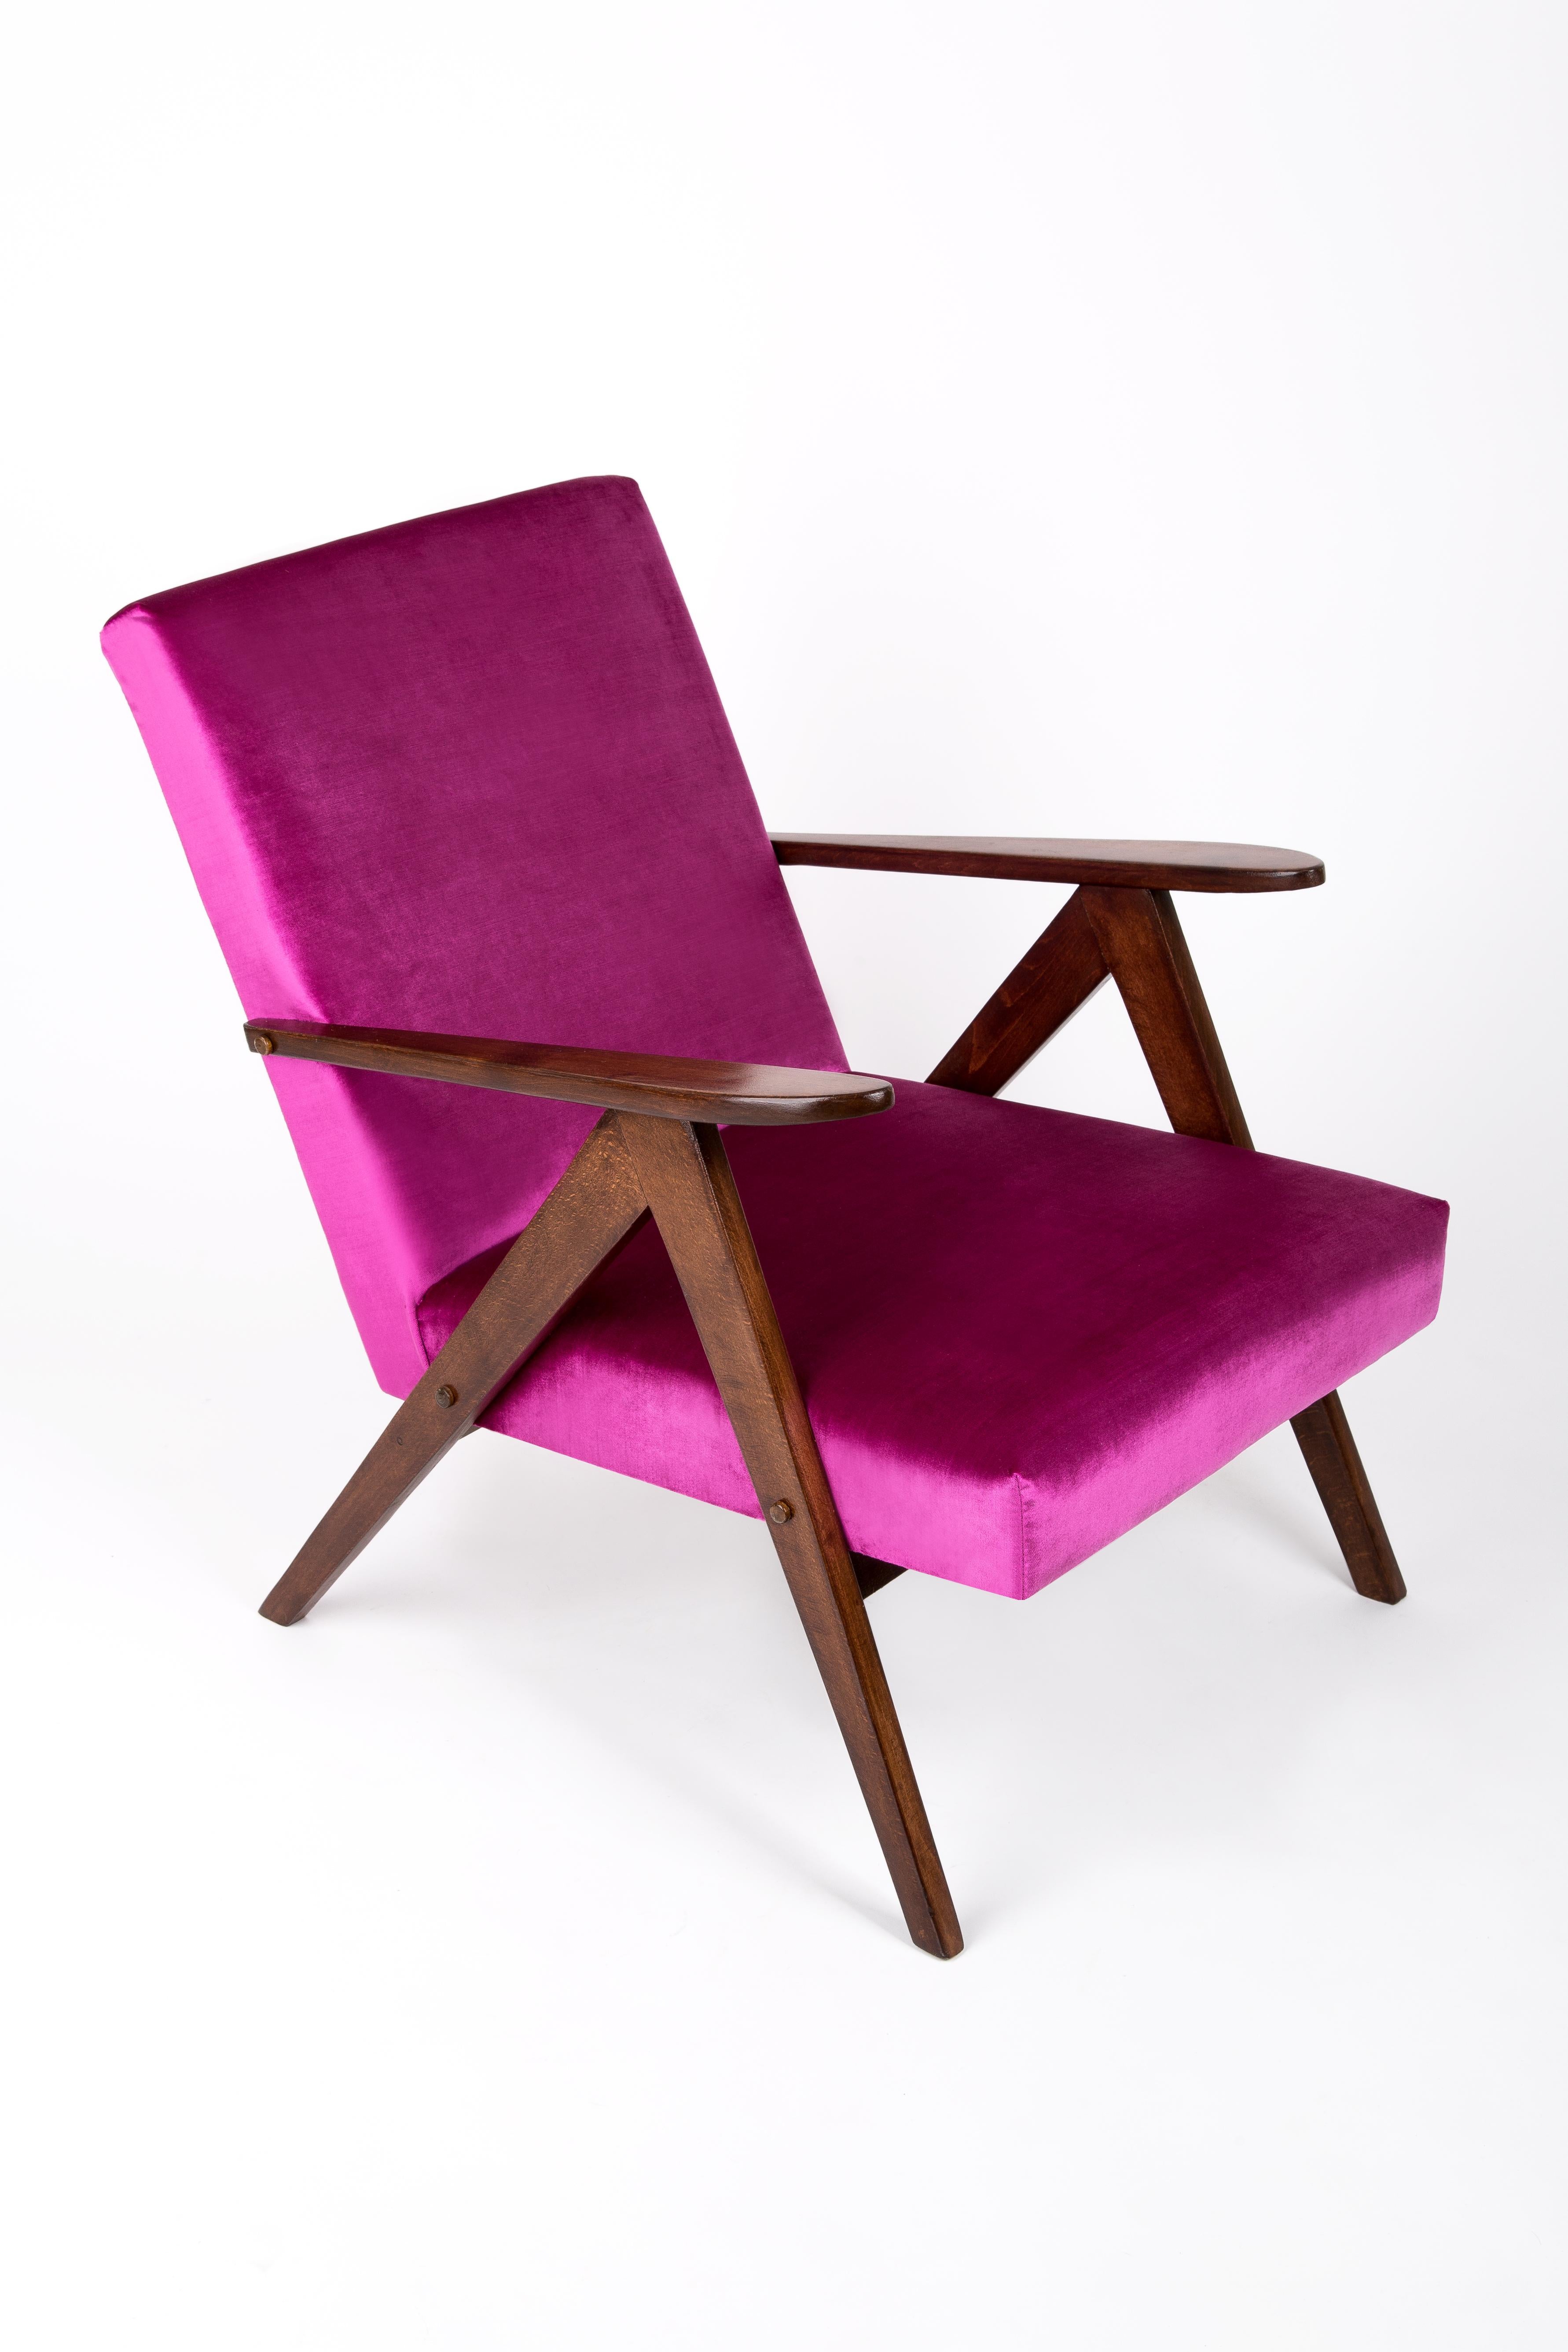 Polnischer Sessel, hergestellt an der Wende der 1960er und 1970er Jahre in der Biegemöbelfabrik in Radomsko. Dies ist eine limitierte Auflage, die mit dem B-310 VAR-Symbol gekennzeichnet ist. Der Sessel ist nach einer gründlichen Renovierung der